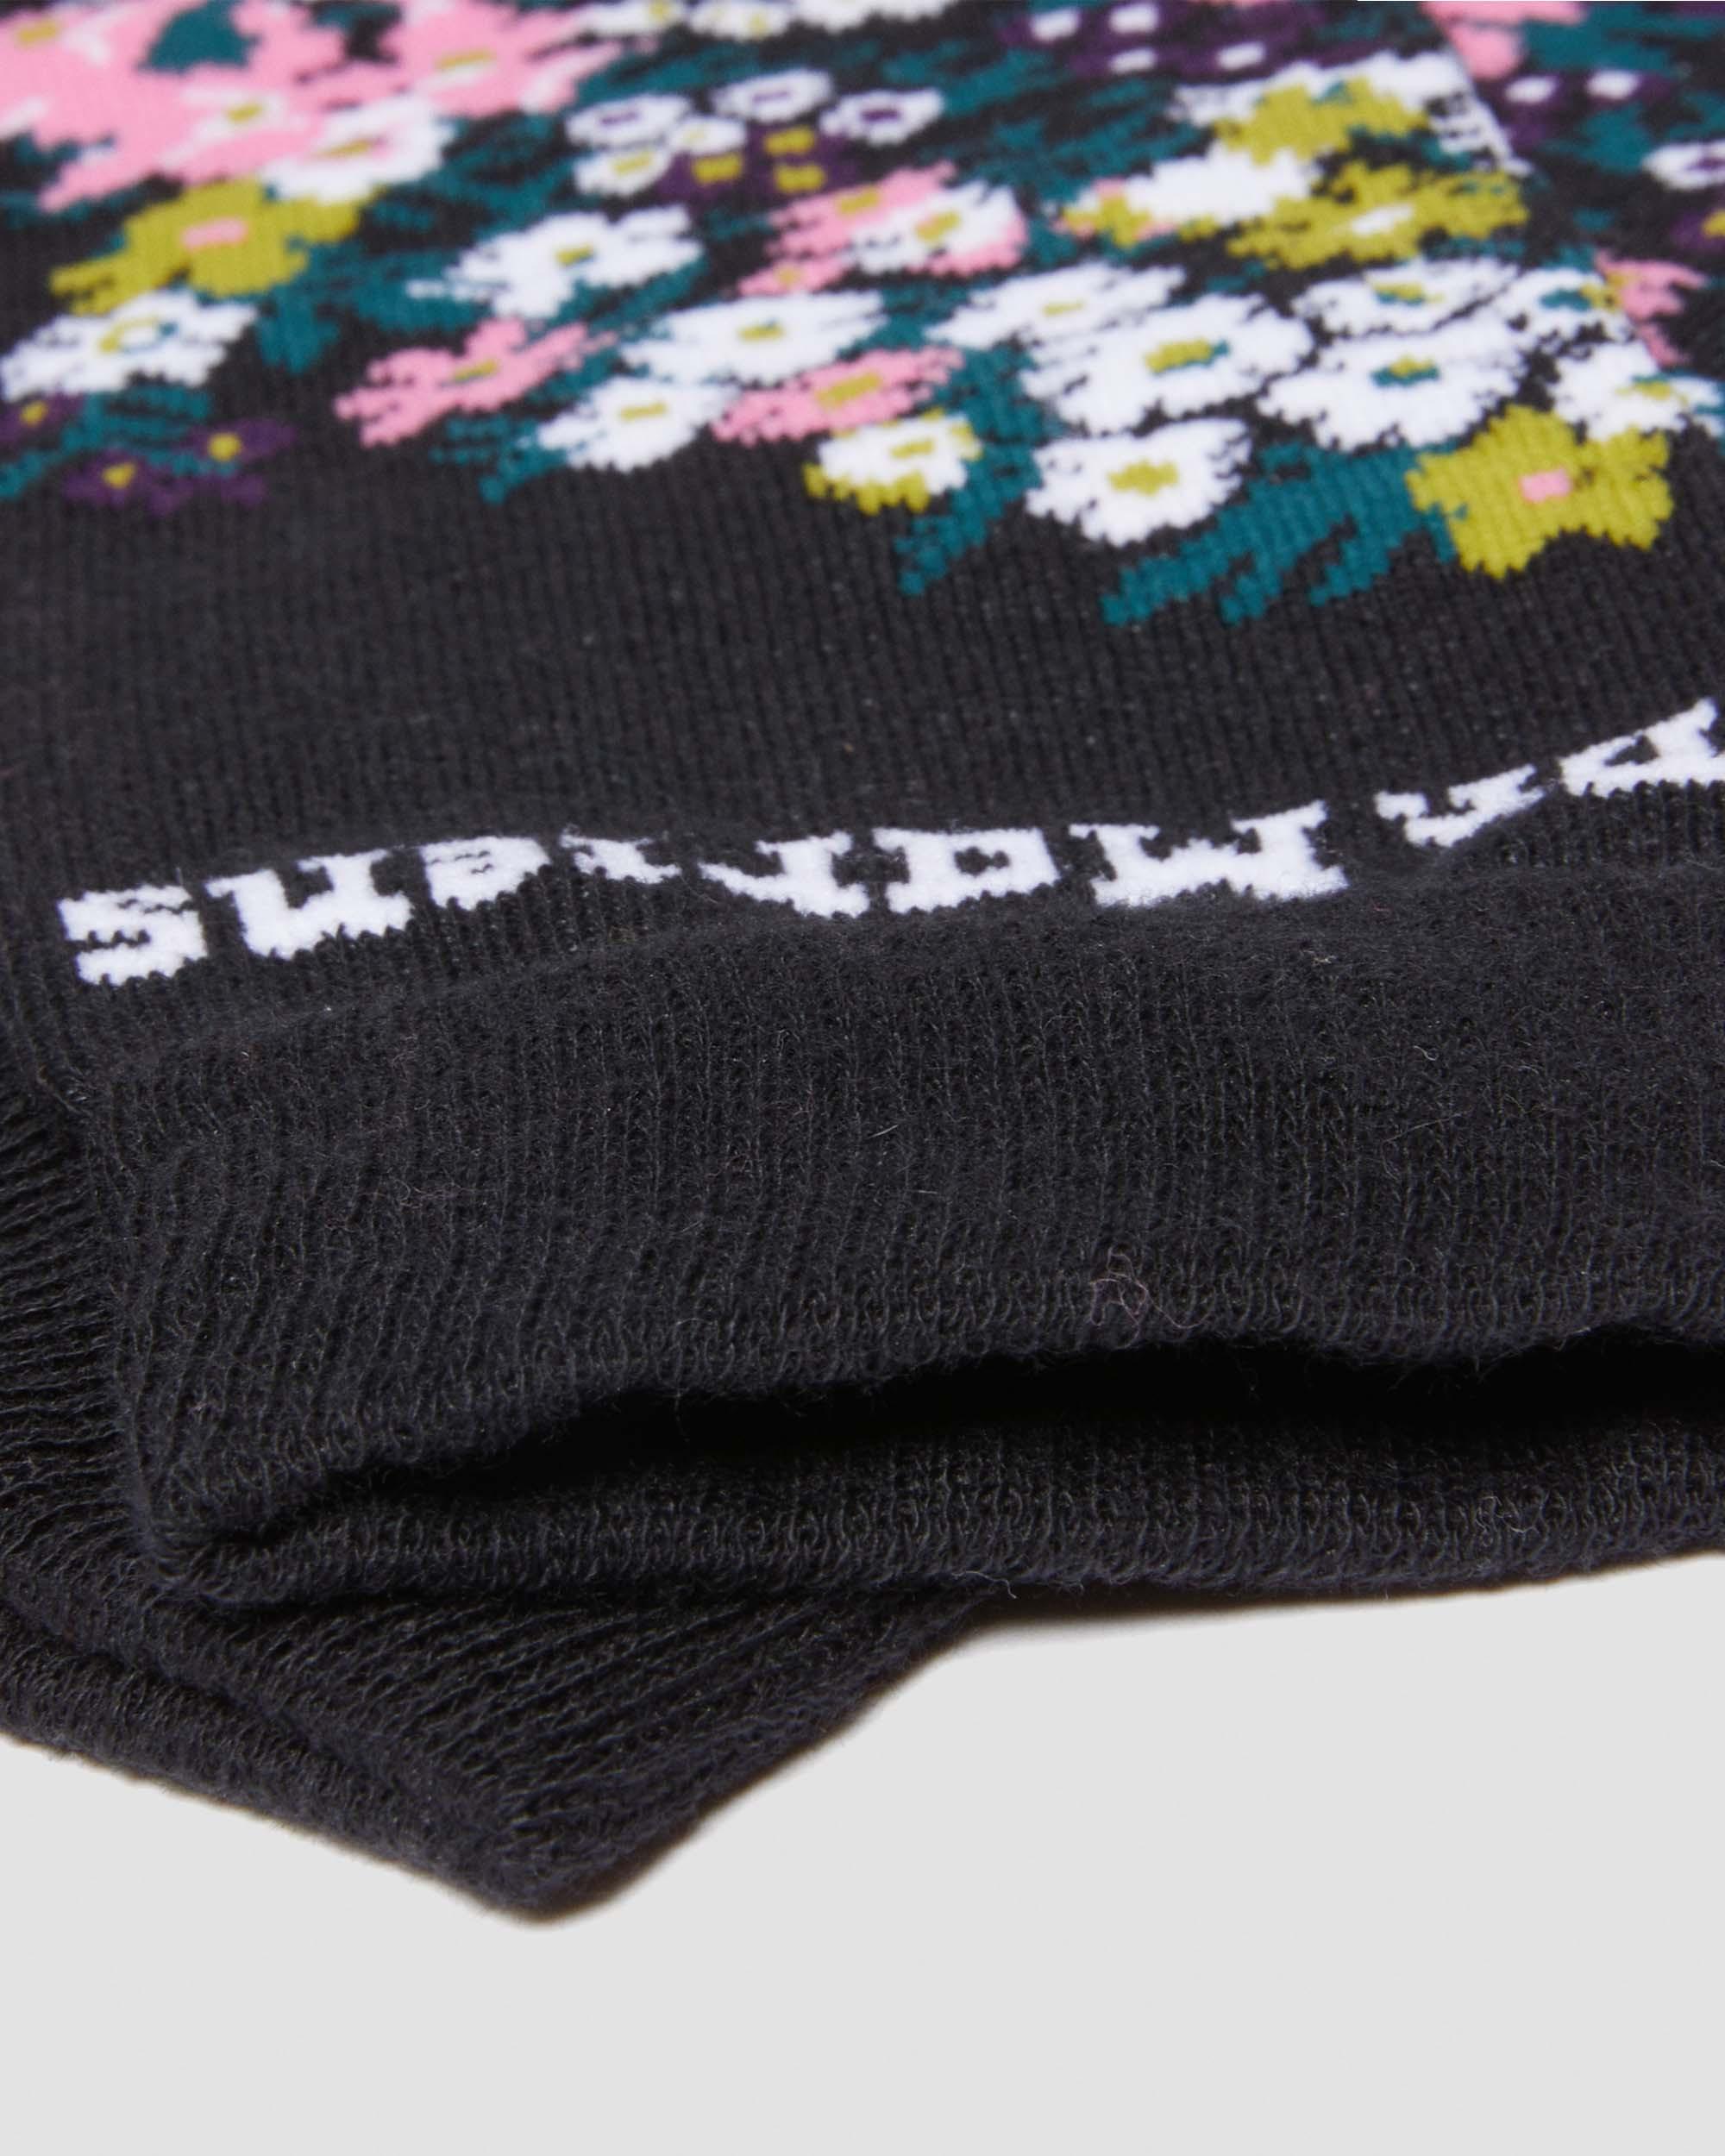 Vintage Floral Cotton Blend Socks in MULTI